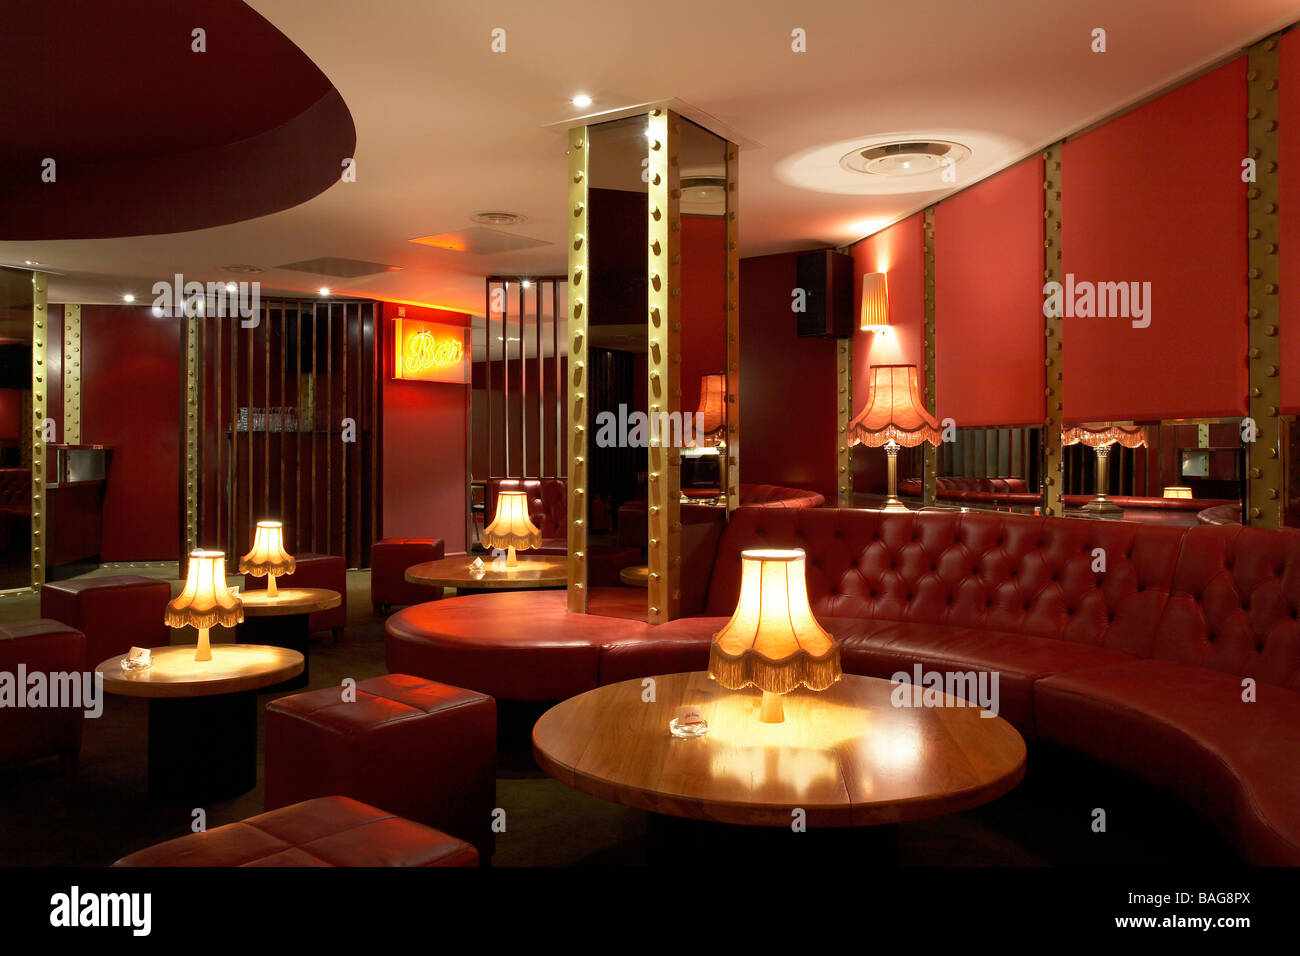 Tutte le corsie a stella, Londra, Regno Unito, architetto sconosciuto, tutte le corsie a stella interna del bar della zona principale che mostra in pelle rossa Foto Stock